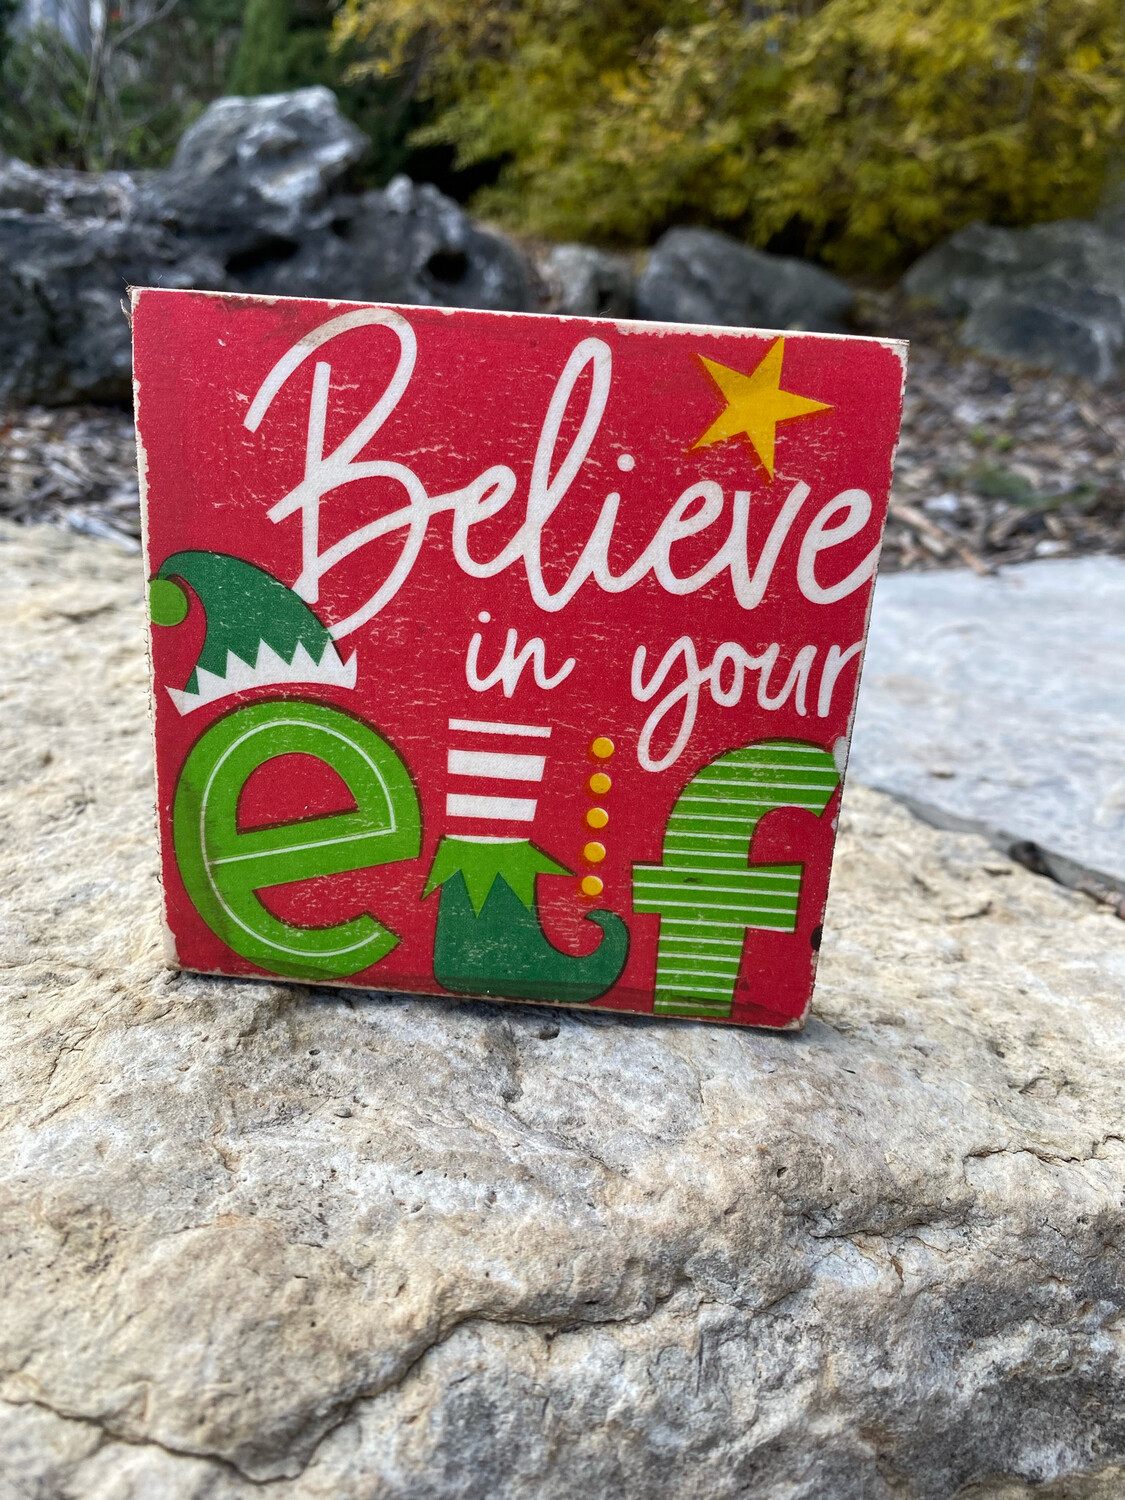 Believe In Your Elf